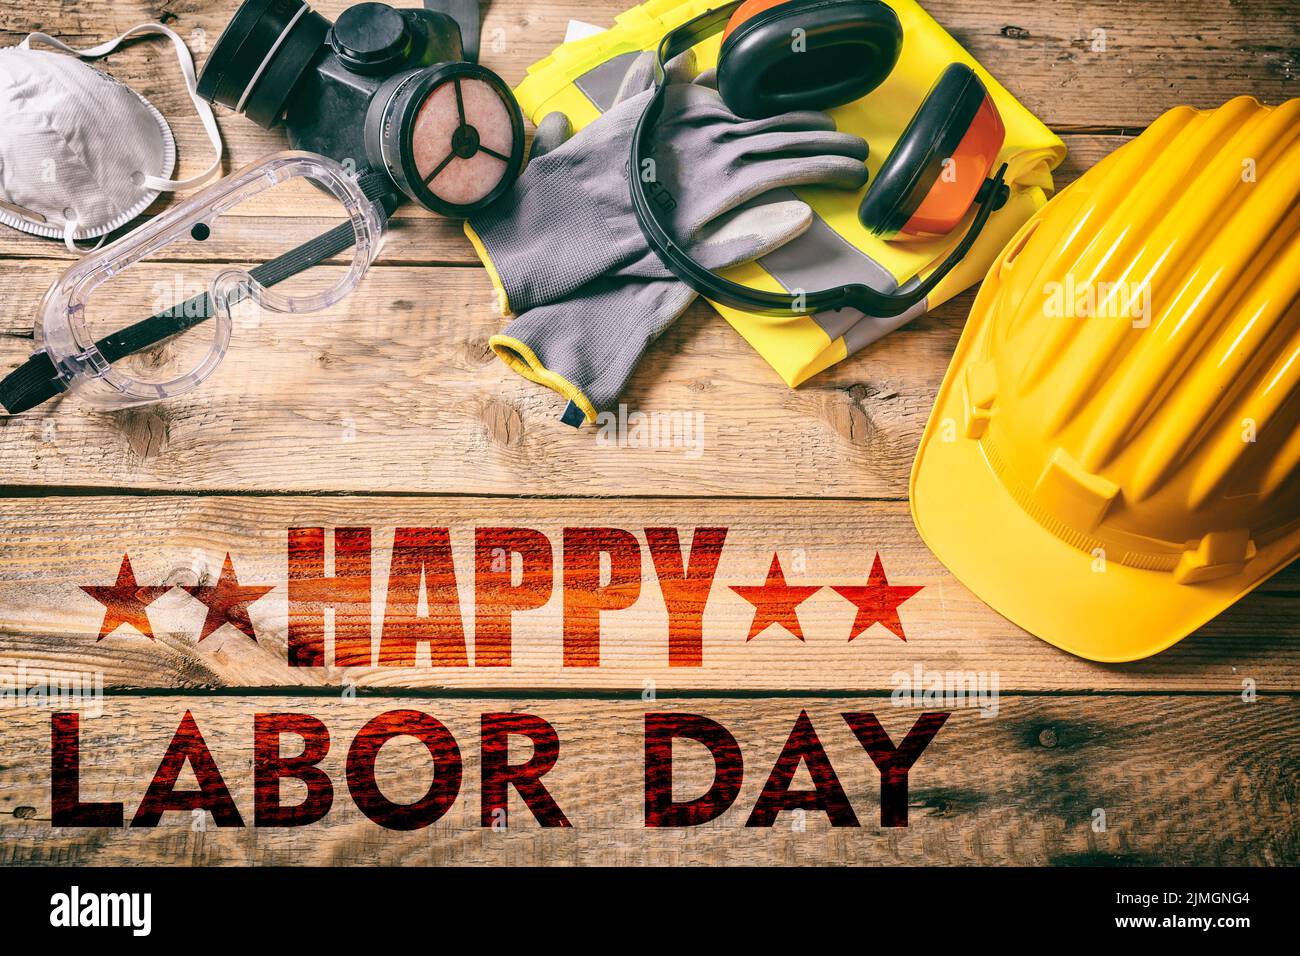 Happy Labor Day texto y herramientas de construcción en una mesa de madera, vista superior. Celebración de las fiestas de Estados Unidos Foto de stock